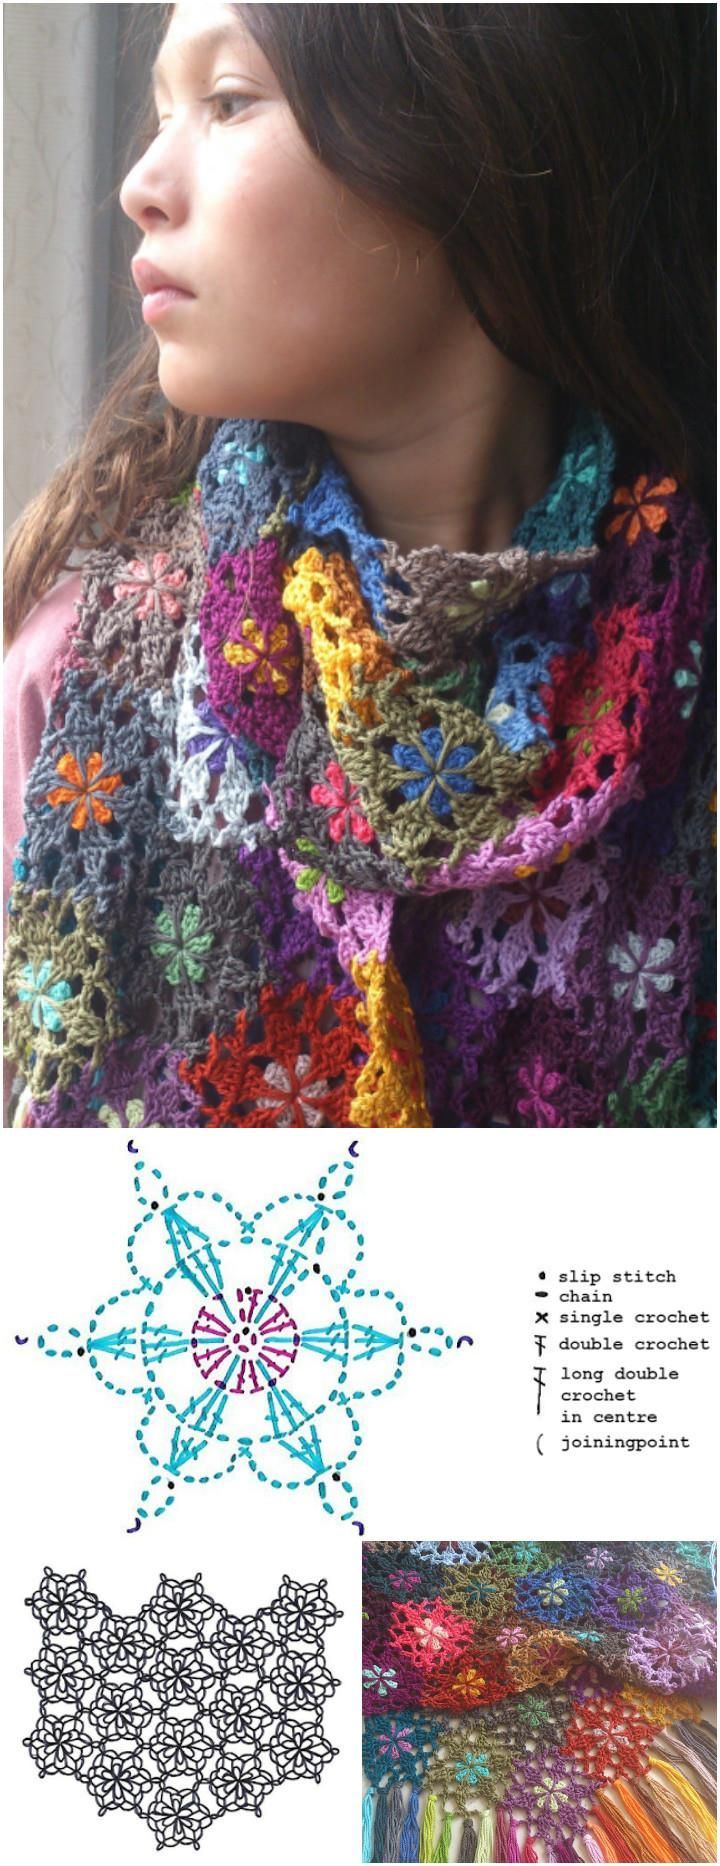 1576139210_136_101-Free-Crochet-Patterns-Full-Instructions-for-Beginners.jpg